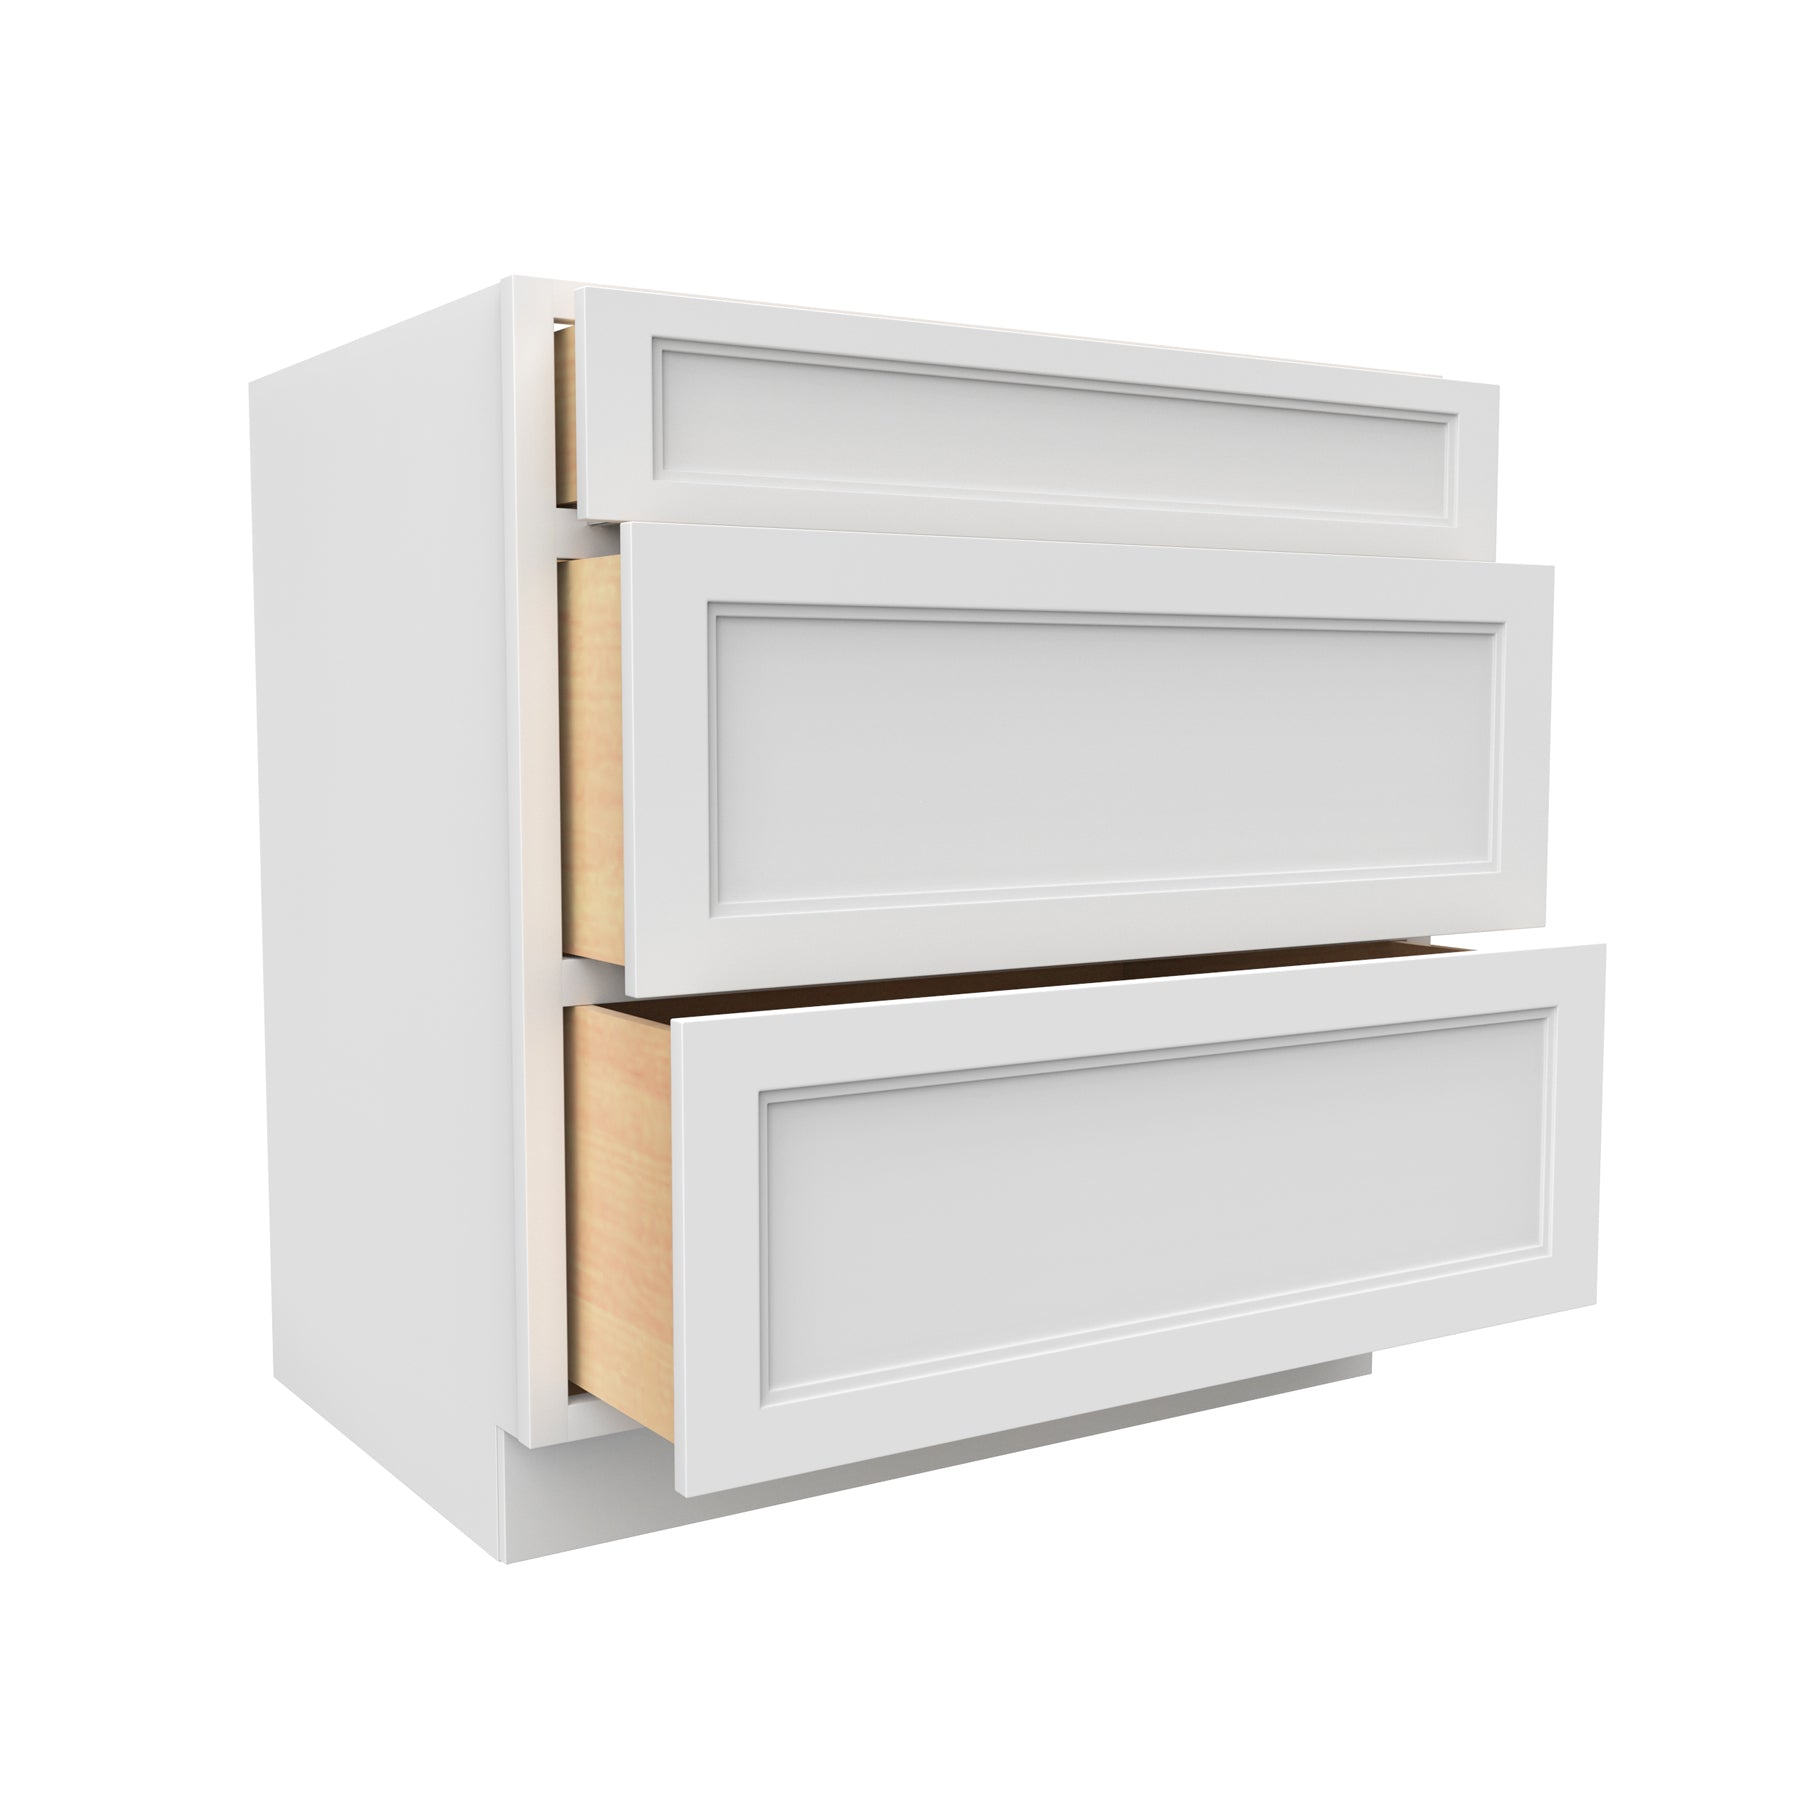 Fashion White - 3 Drawer Base Cabinet | 33"W x 34.5"H x 24"D